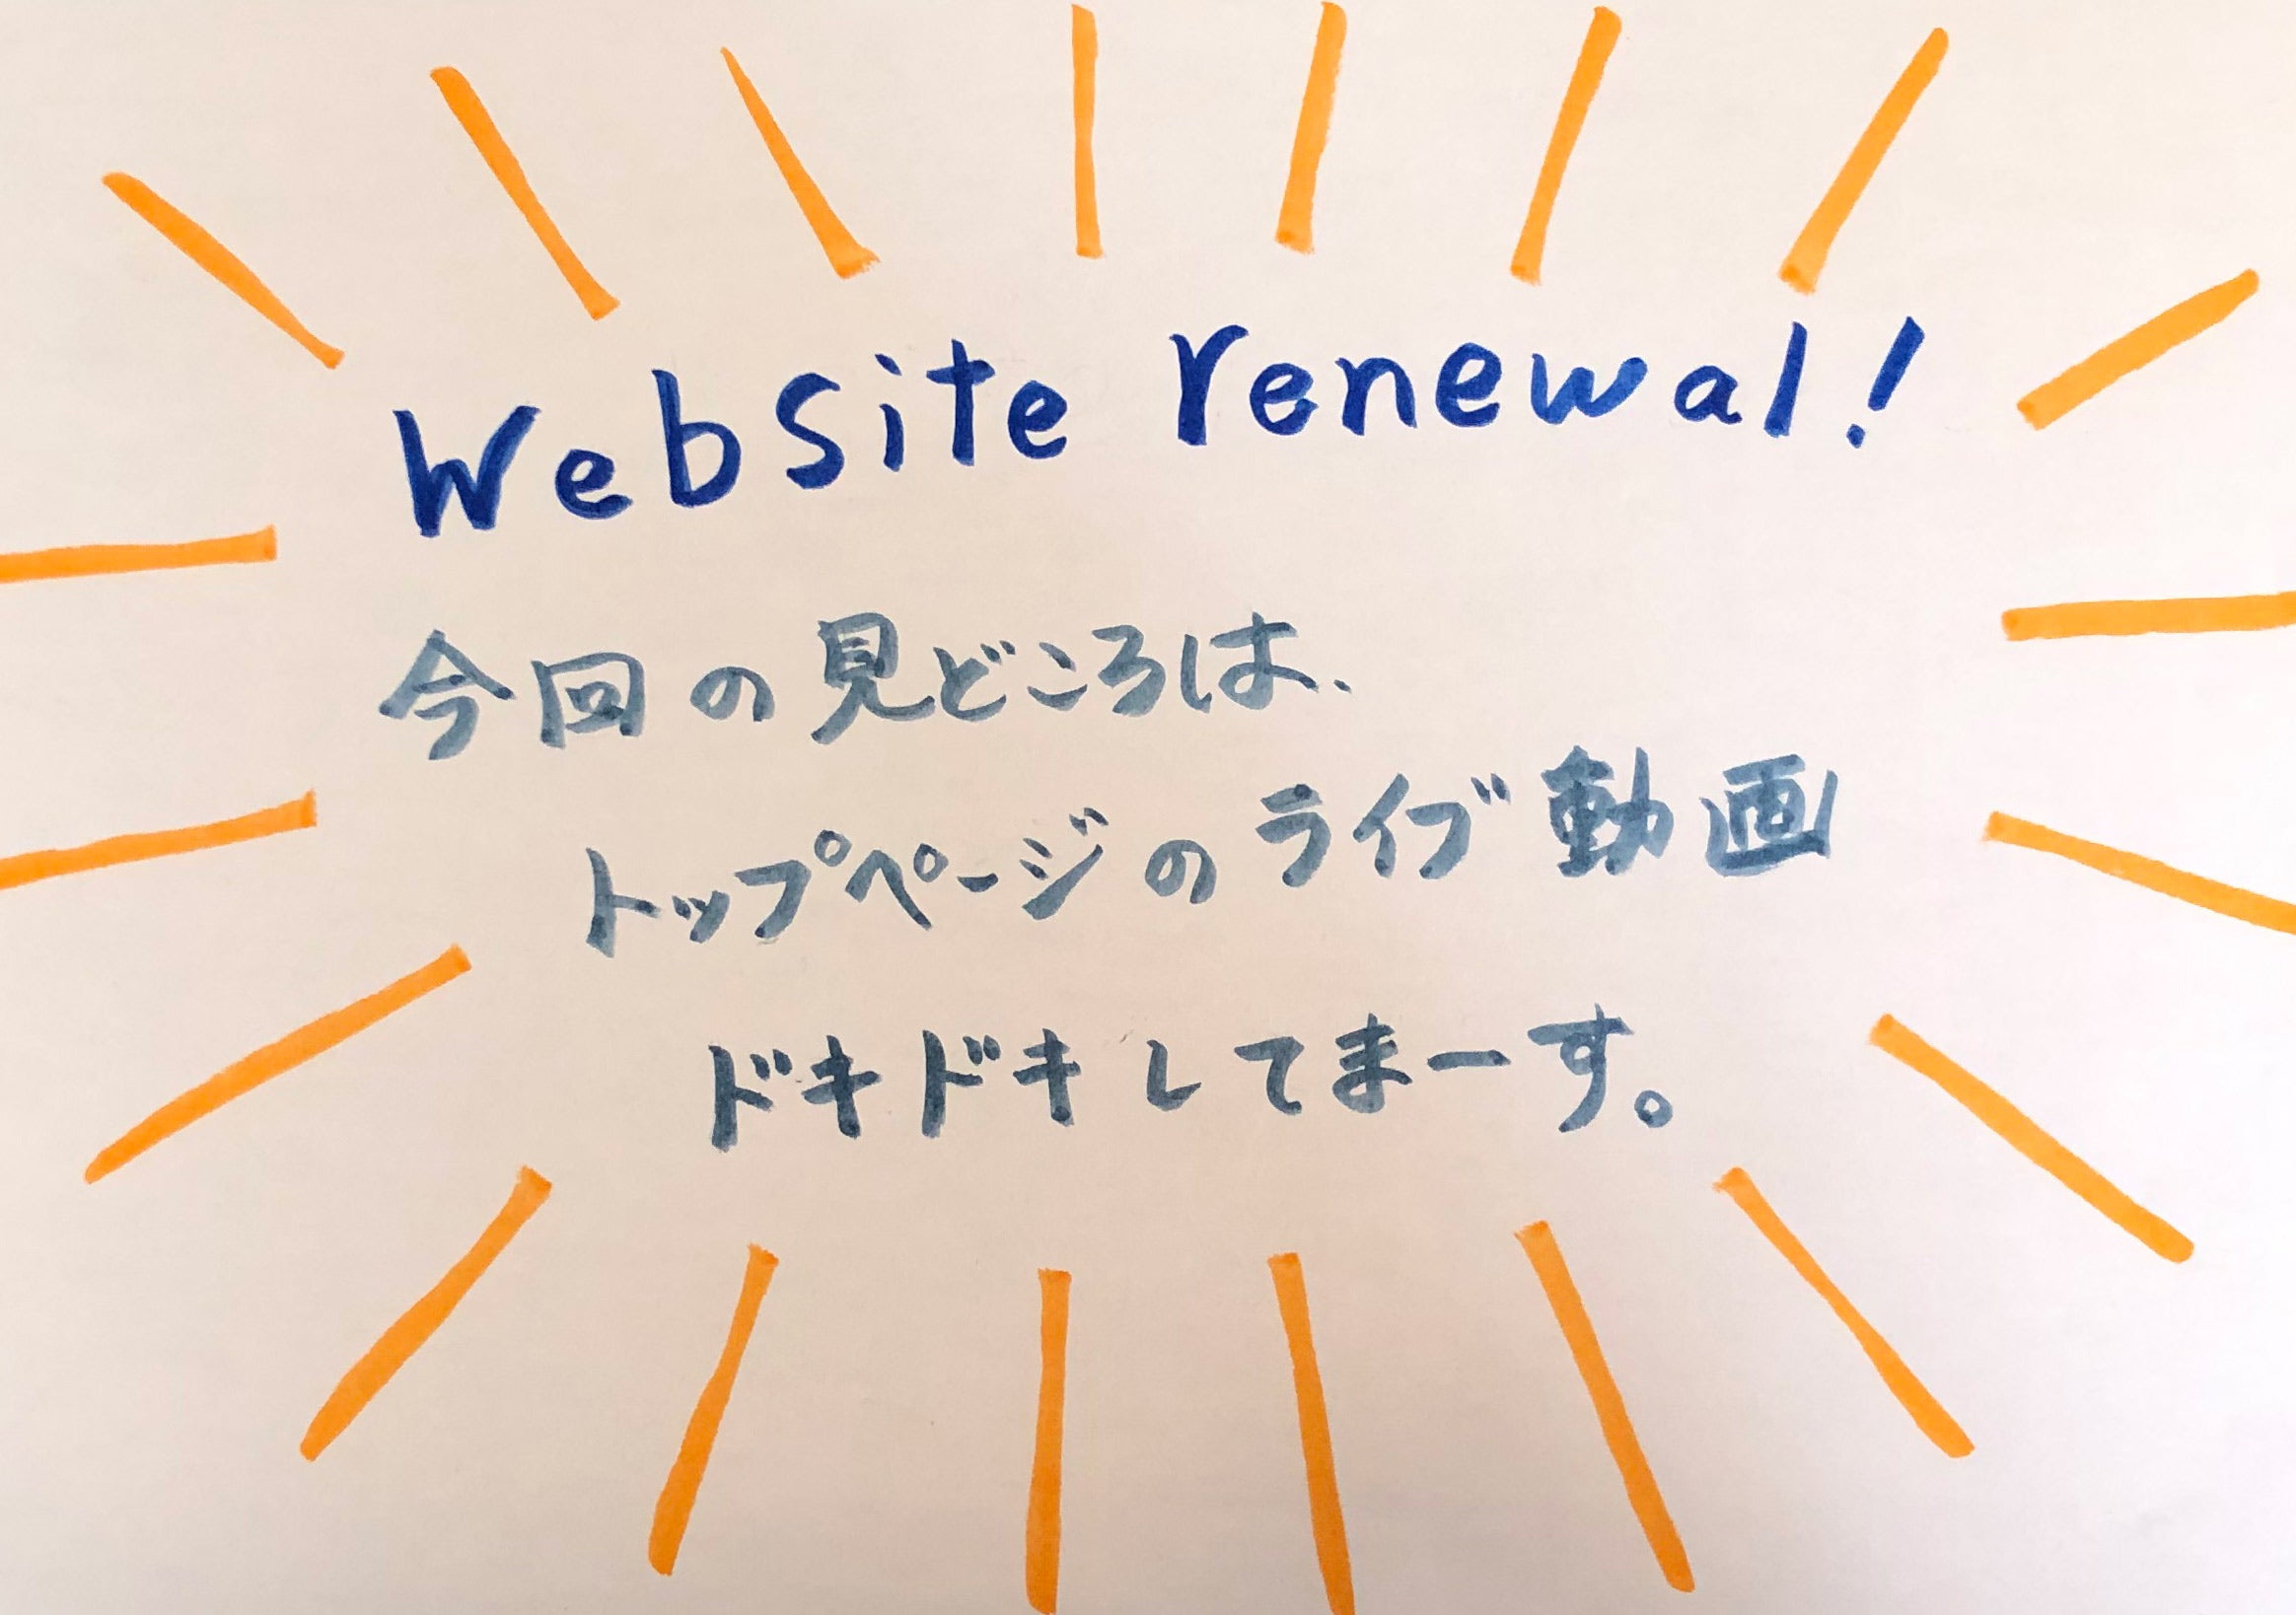 Website Renewal!!